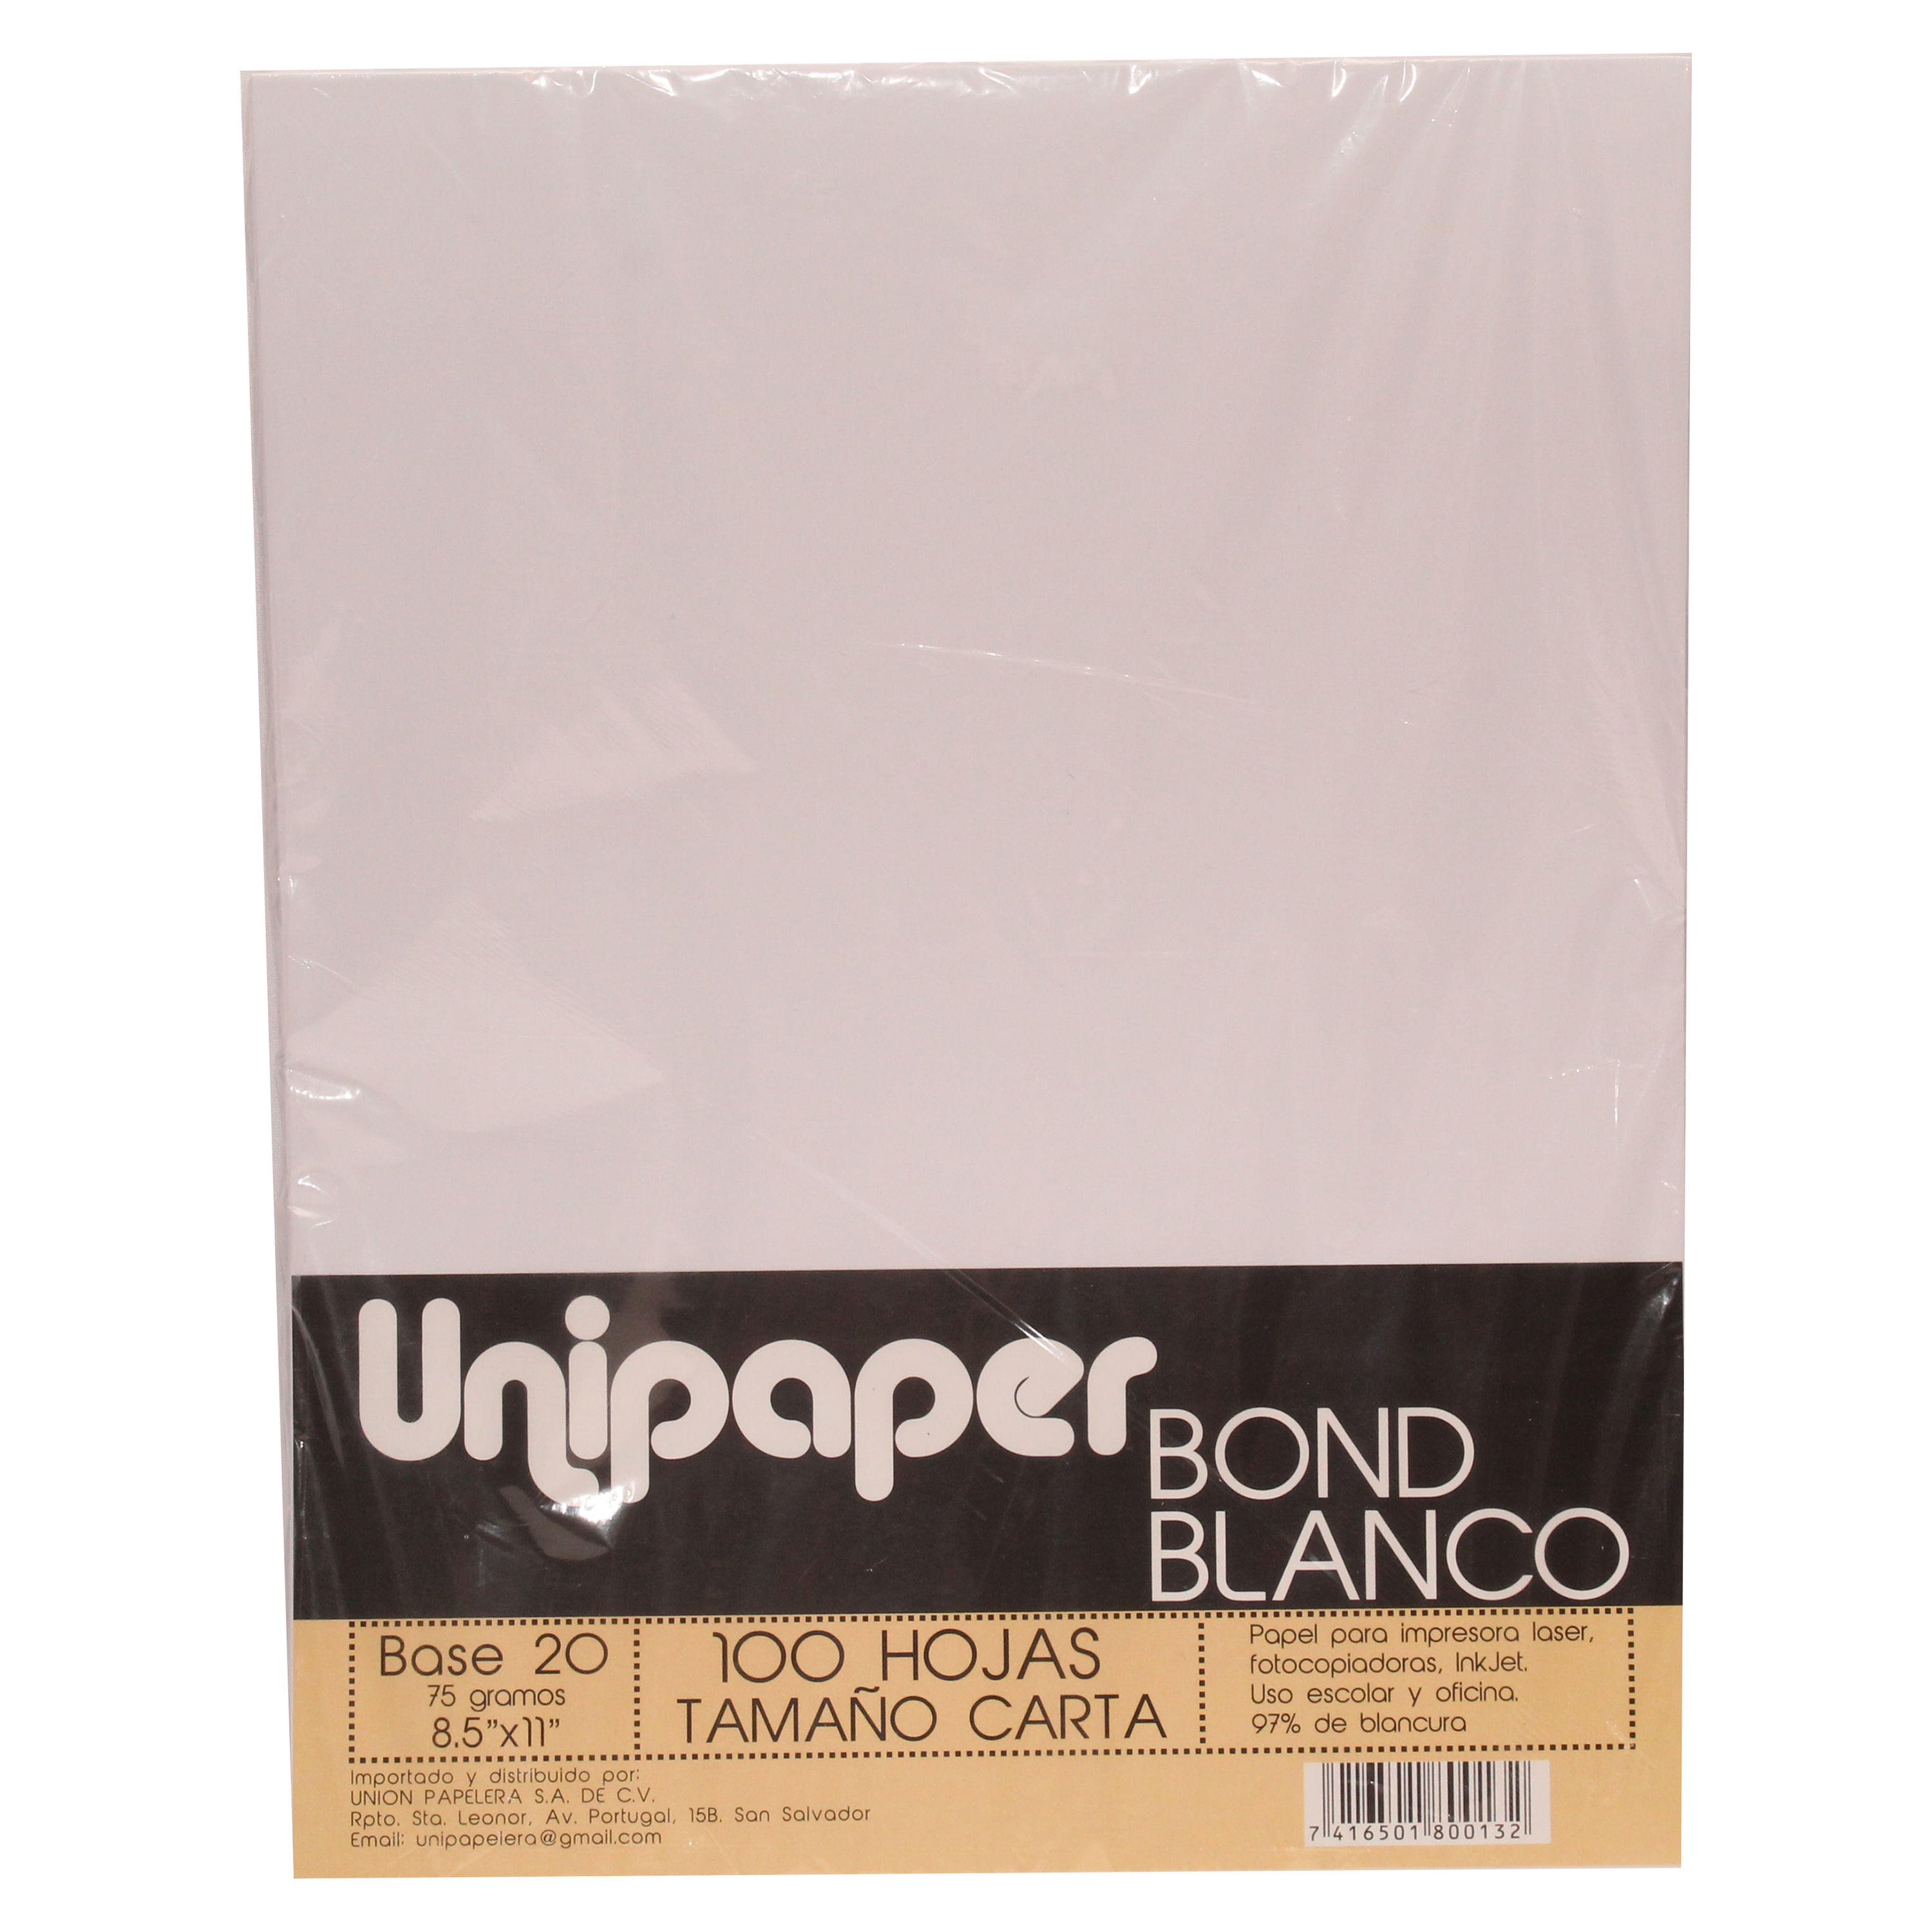 Hojas blancas bond 20 - 8.5 x 11 (100 hojas) - Ampo – Officemate